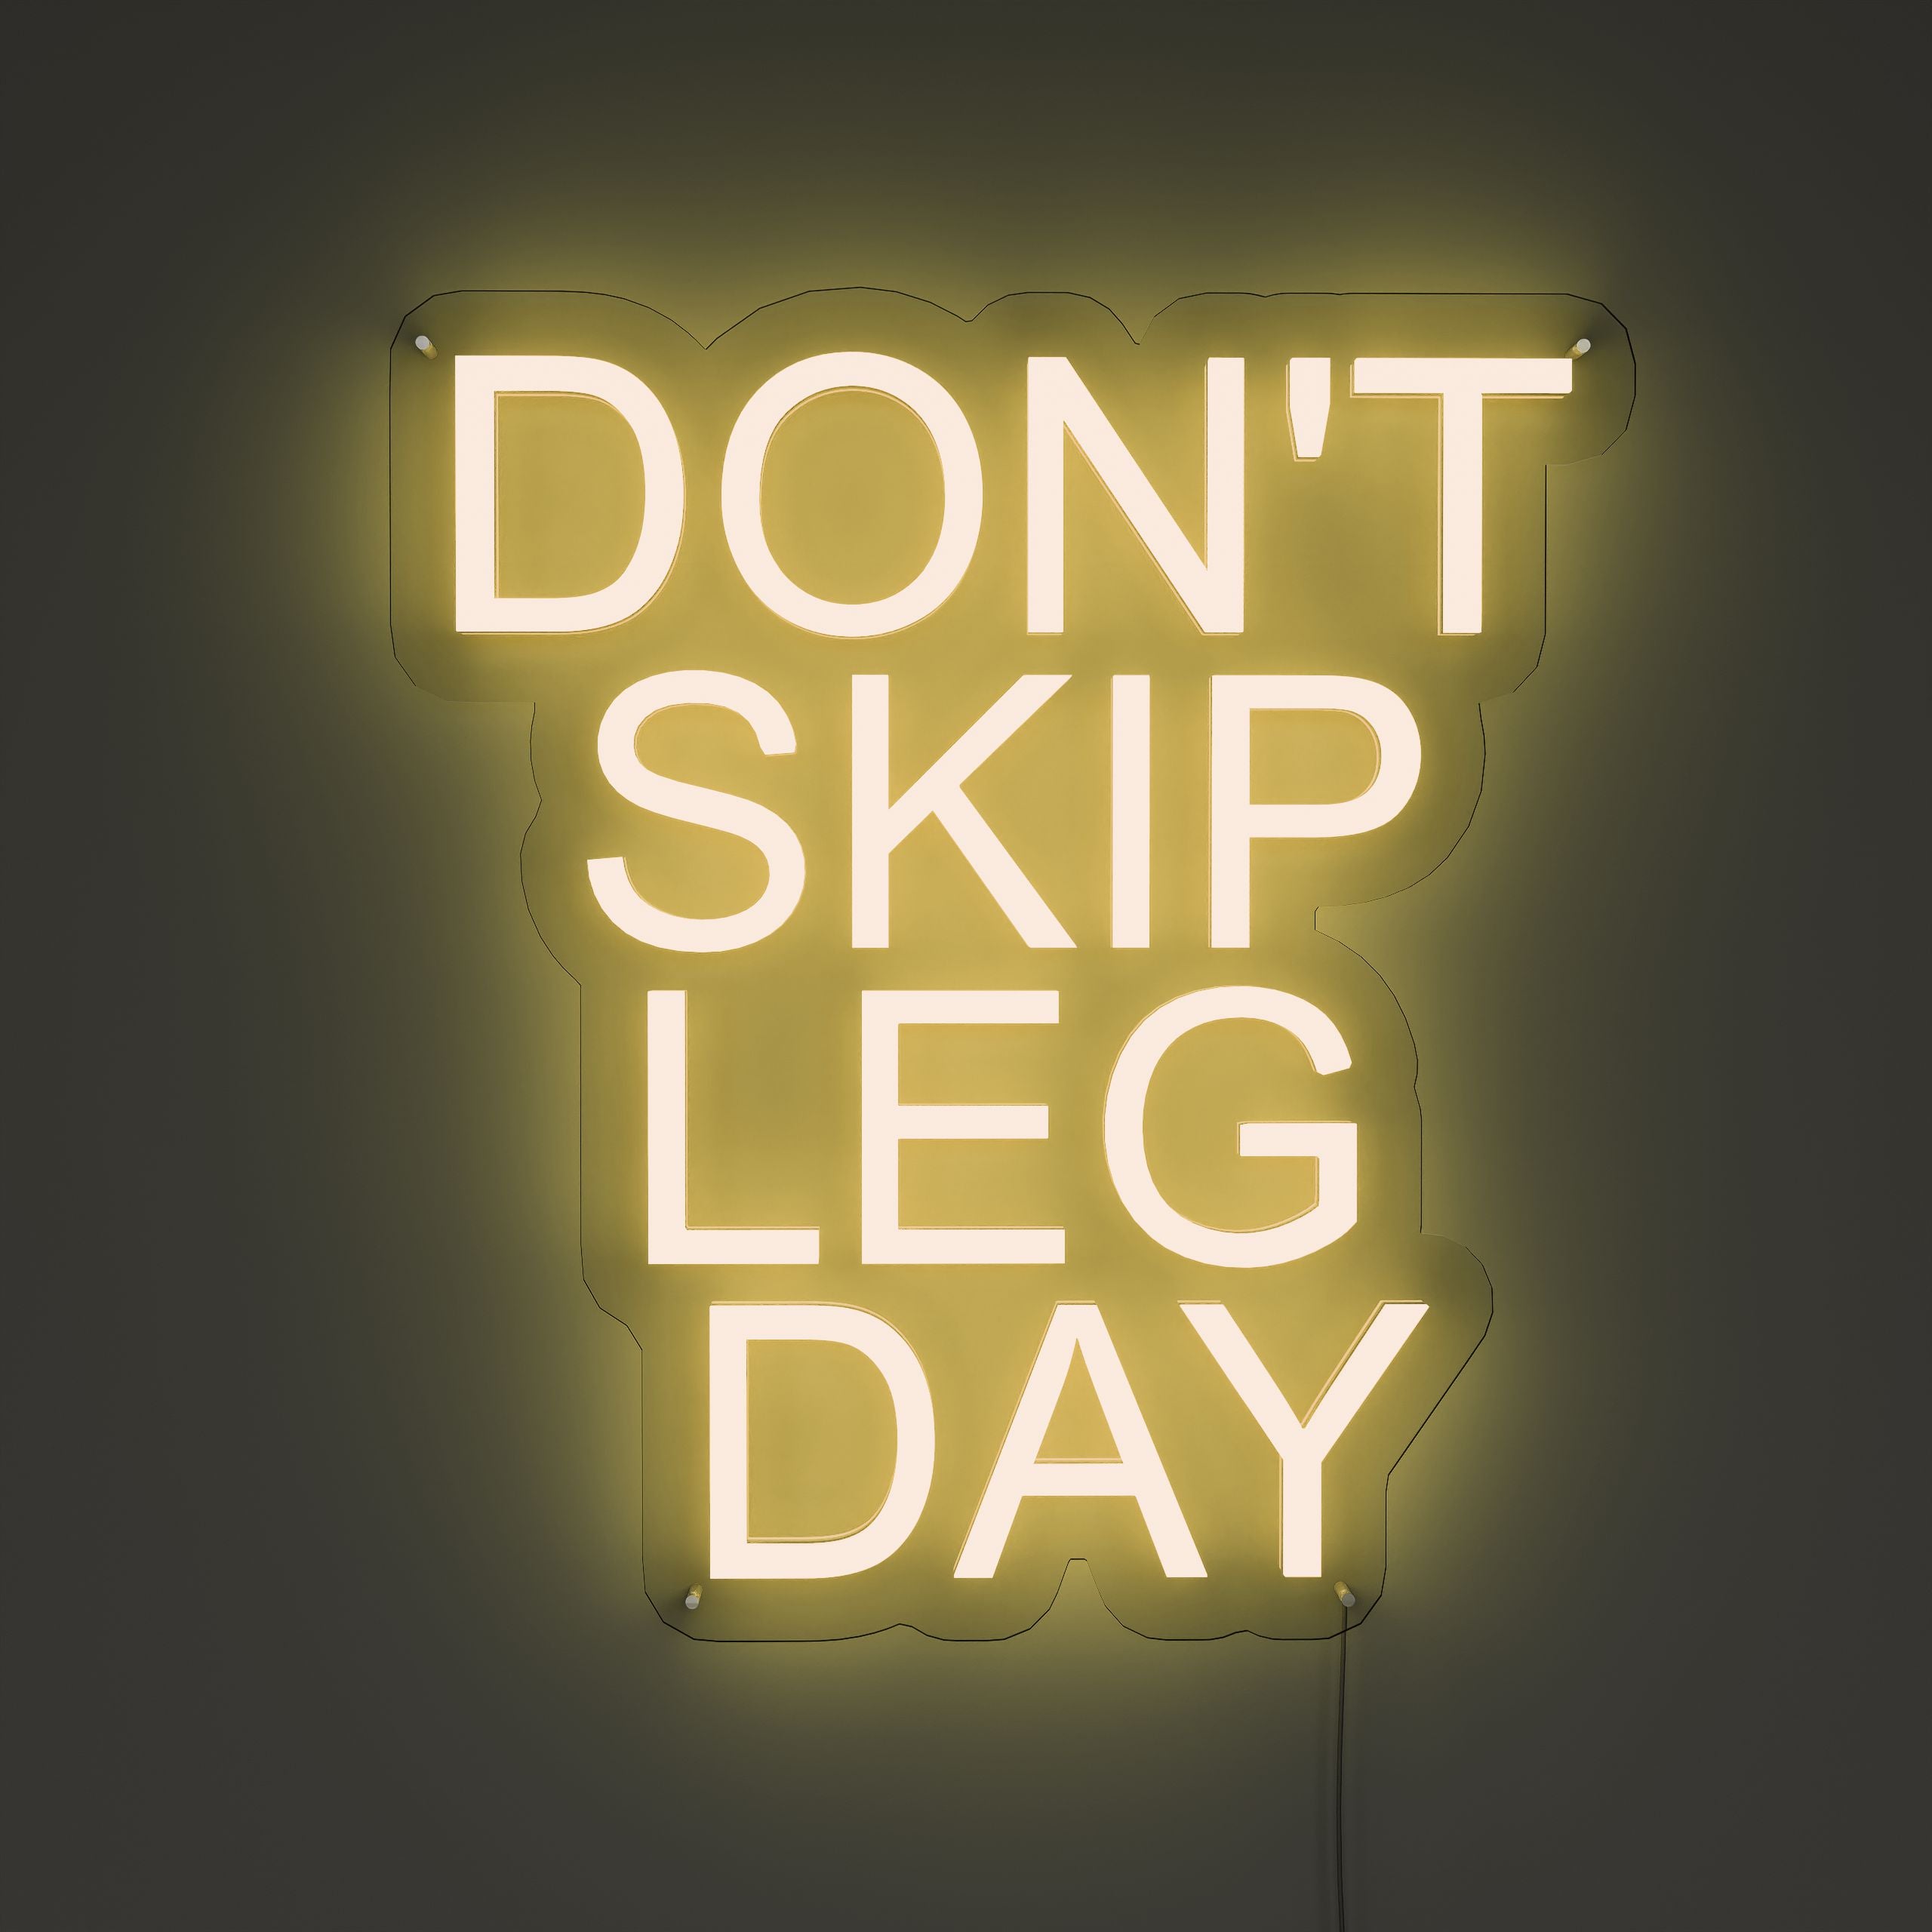 Don't Skip Leg Day